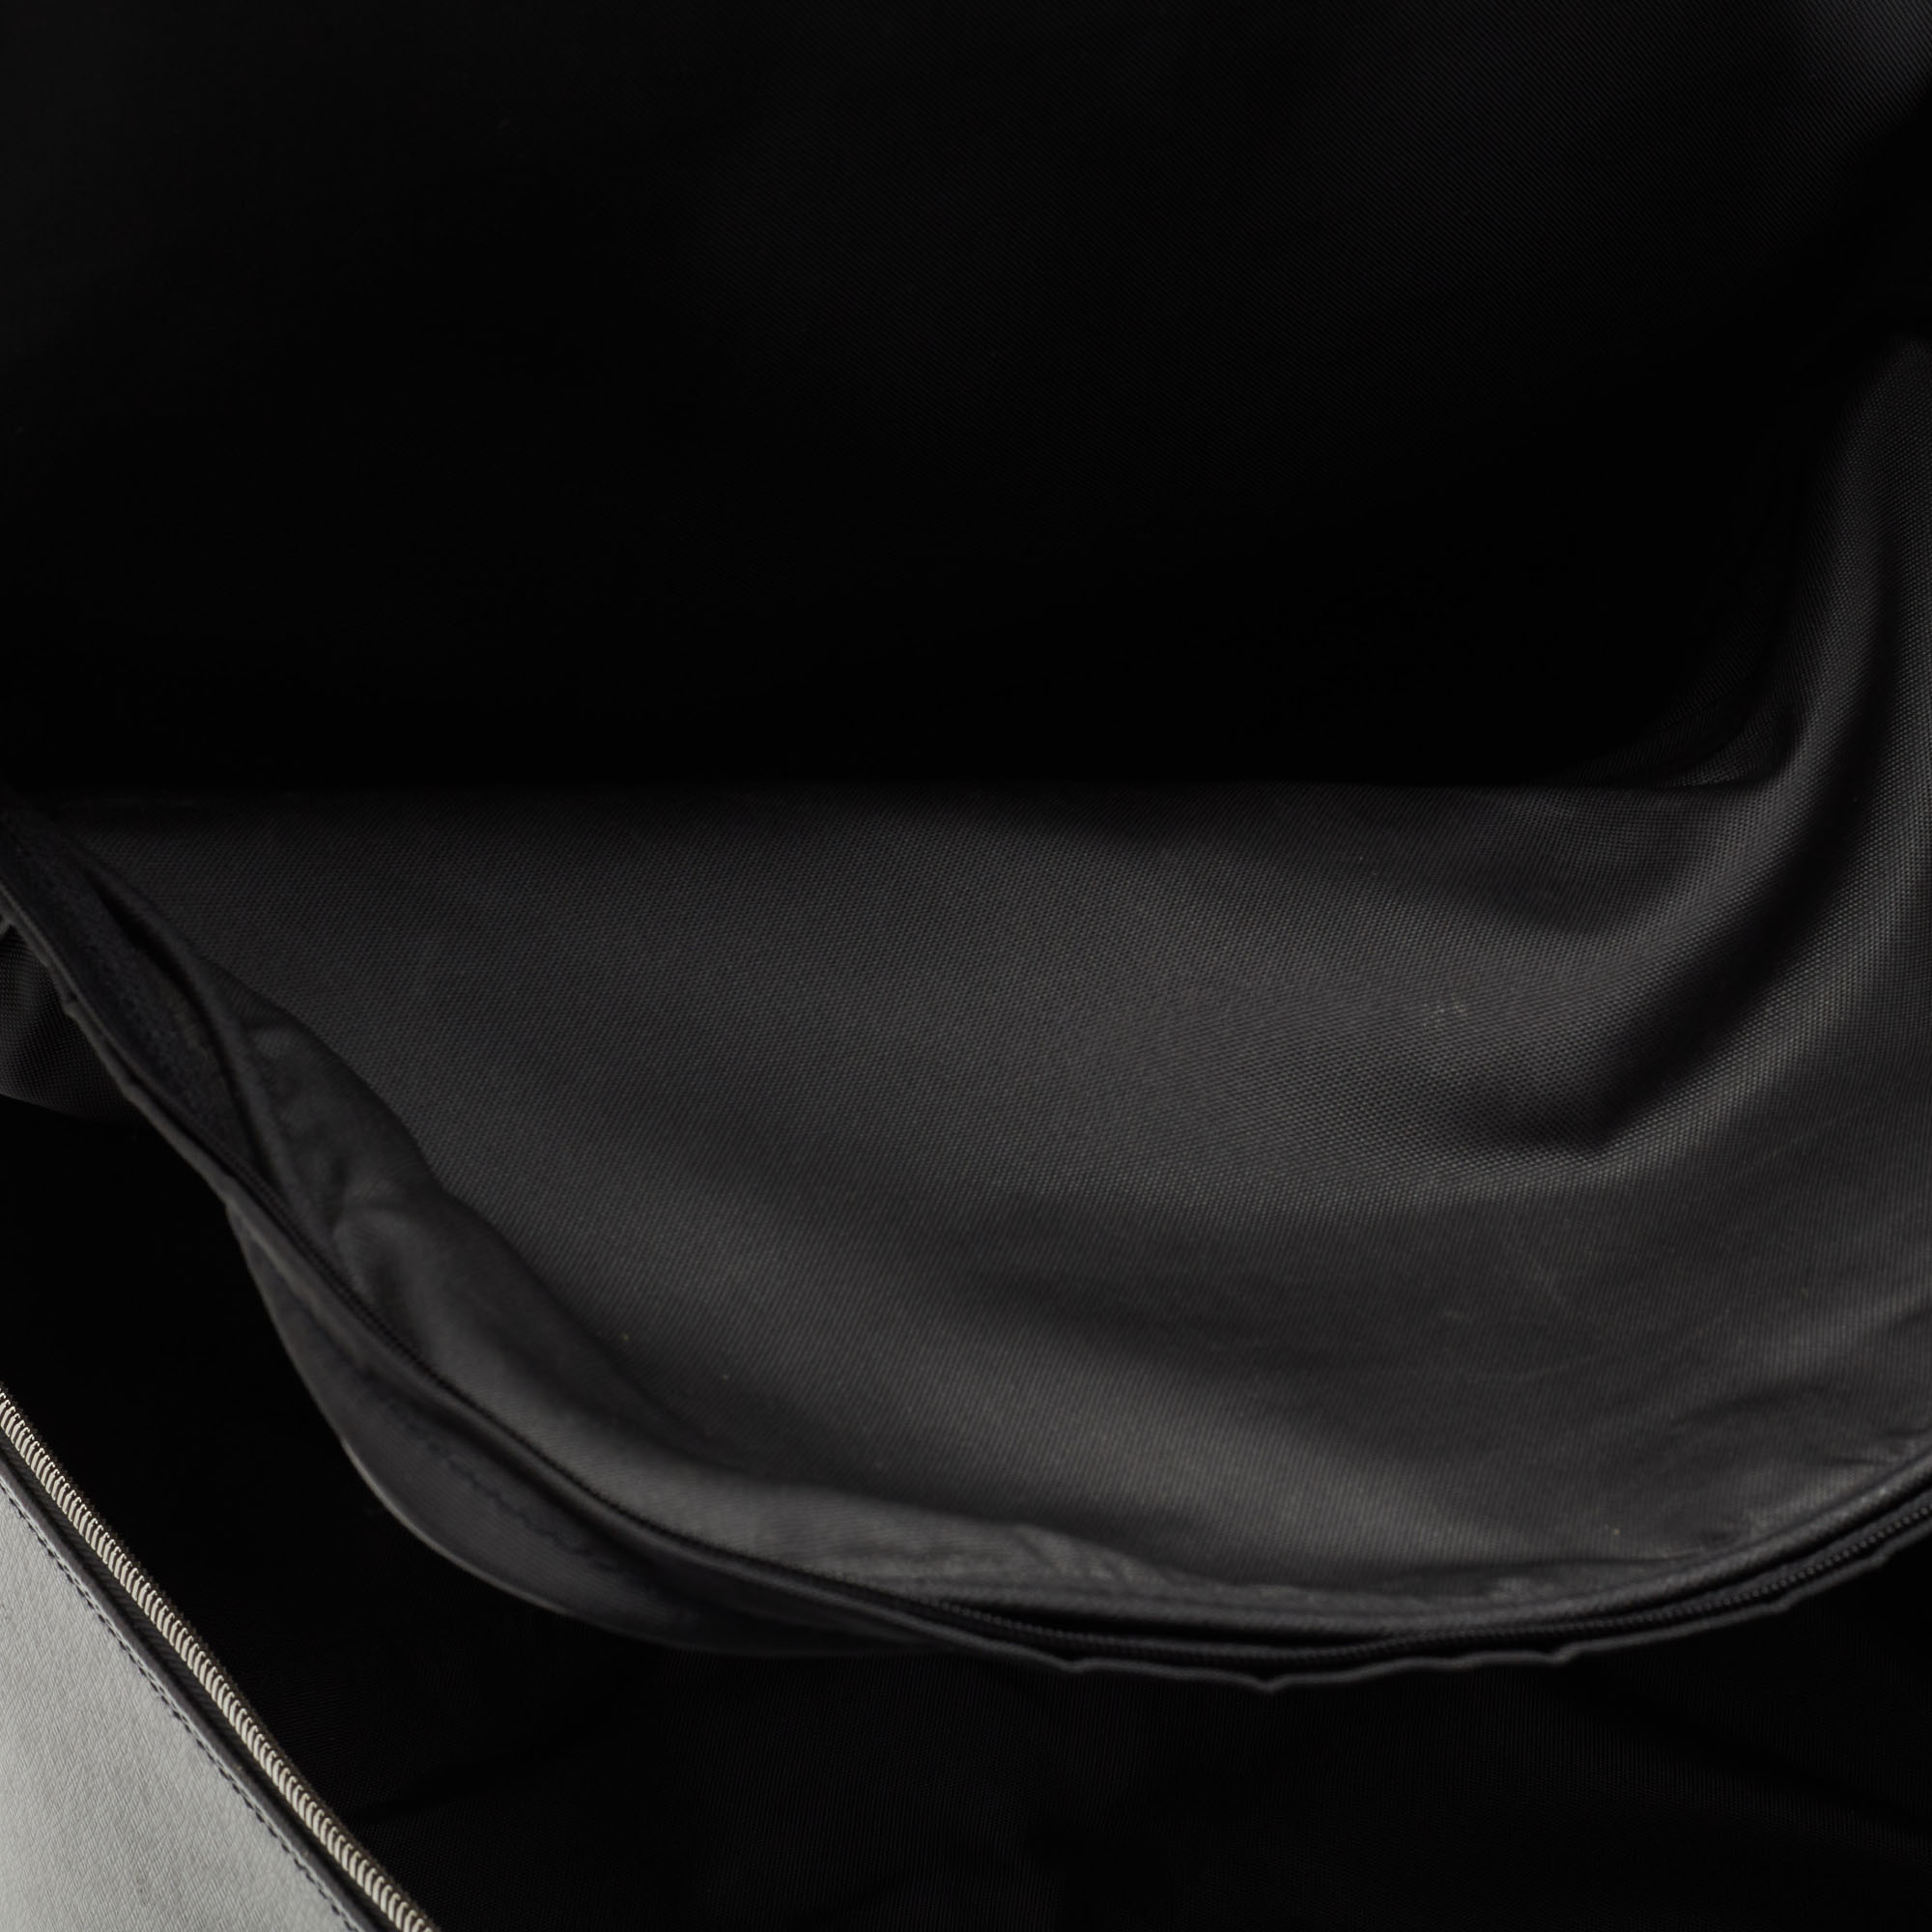 Louis Vuitton Ardoise Taiga Leather Pegase 45 Business Luggage